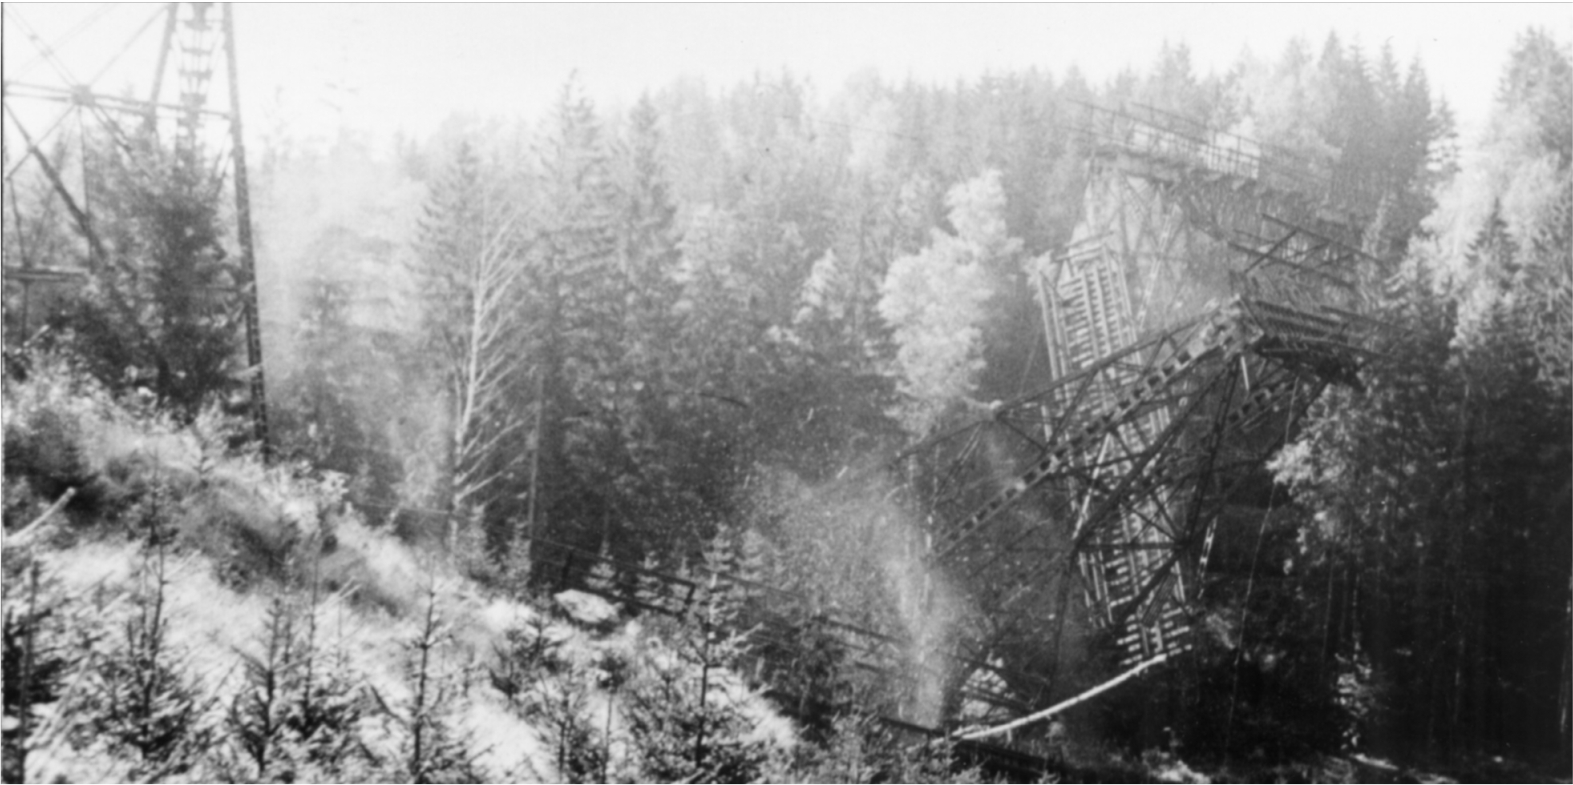 Greifenbachtalbrücke, Geyrische Brücke